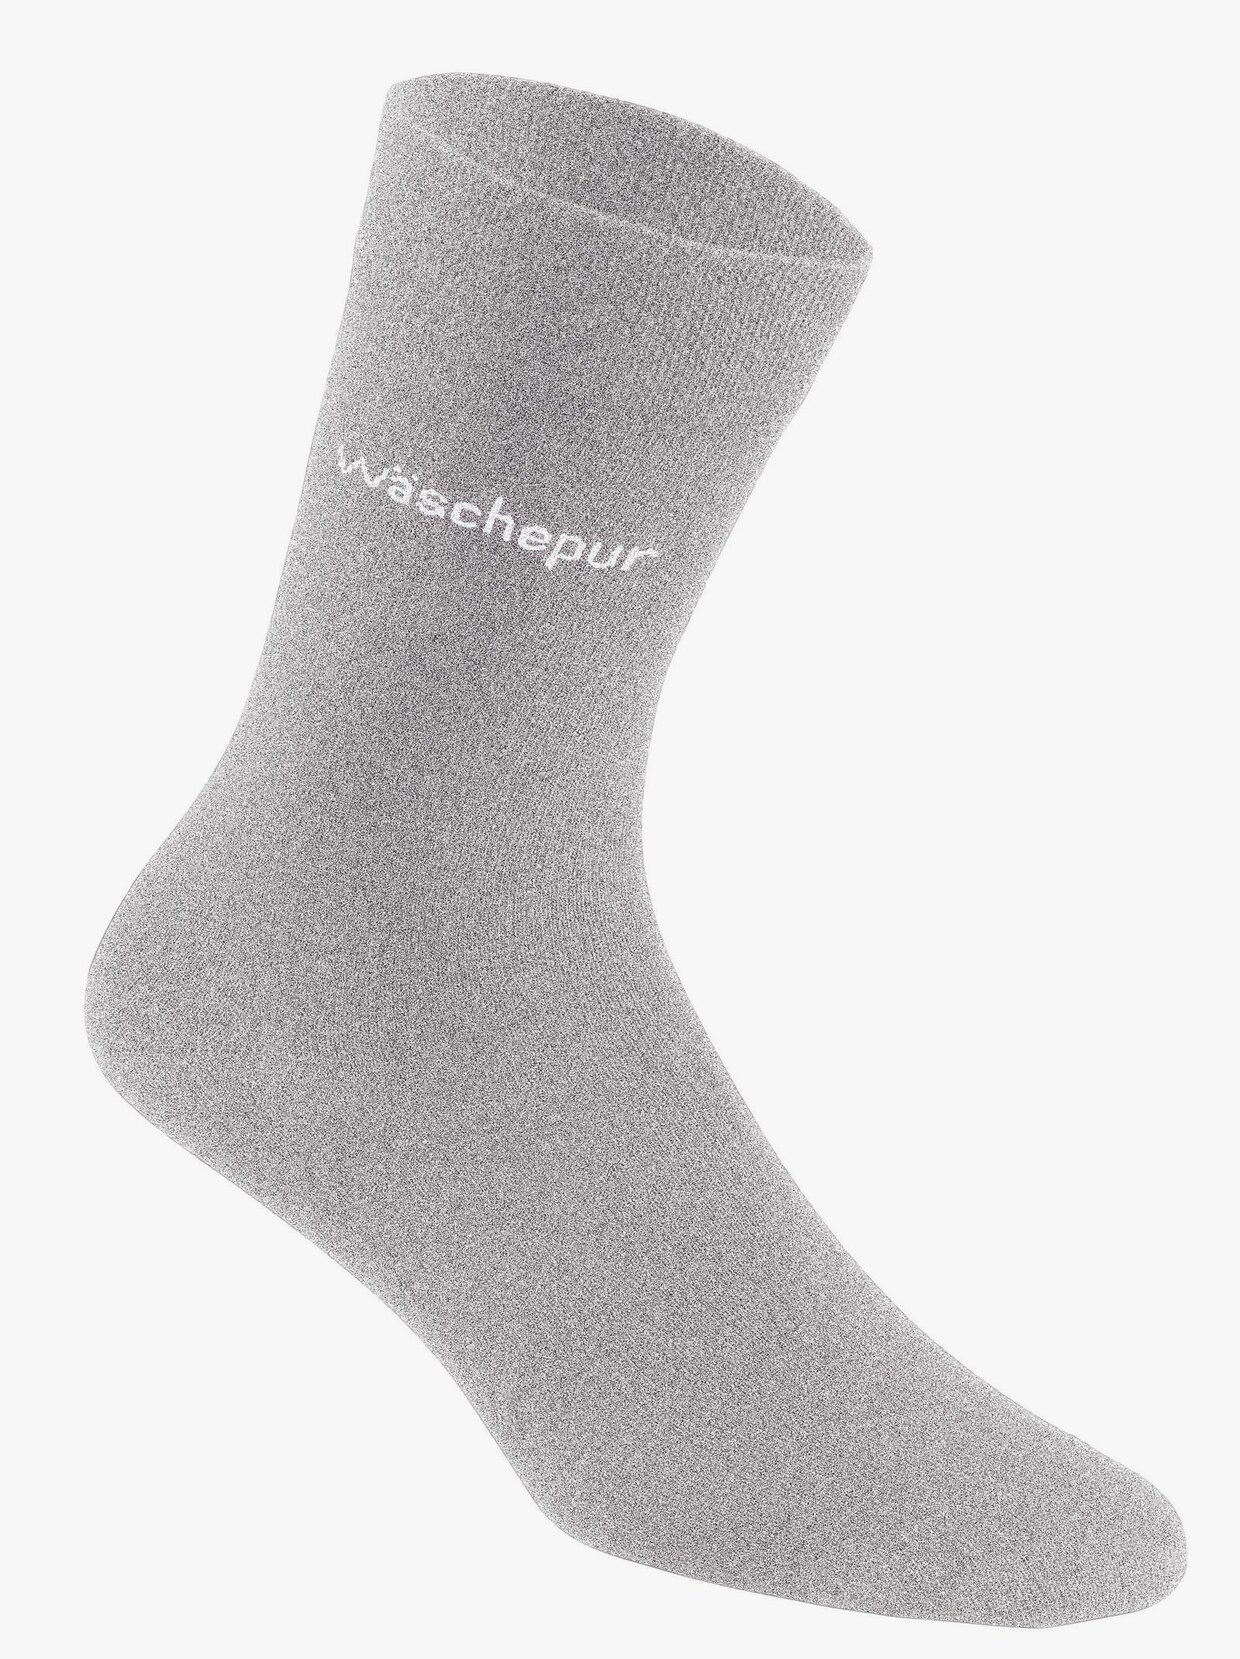 Socken herren bunt - Alle Produkte unter den analysierten Socken herren bunt!